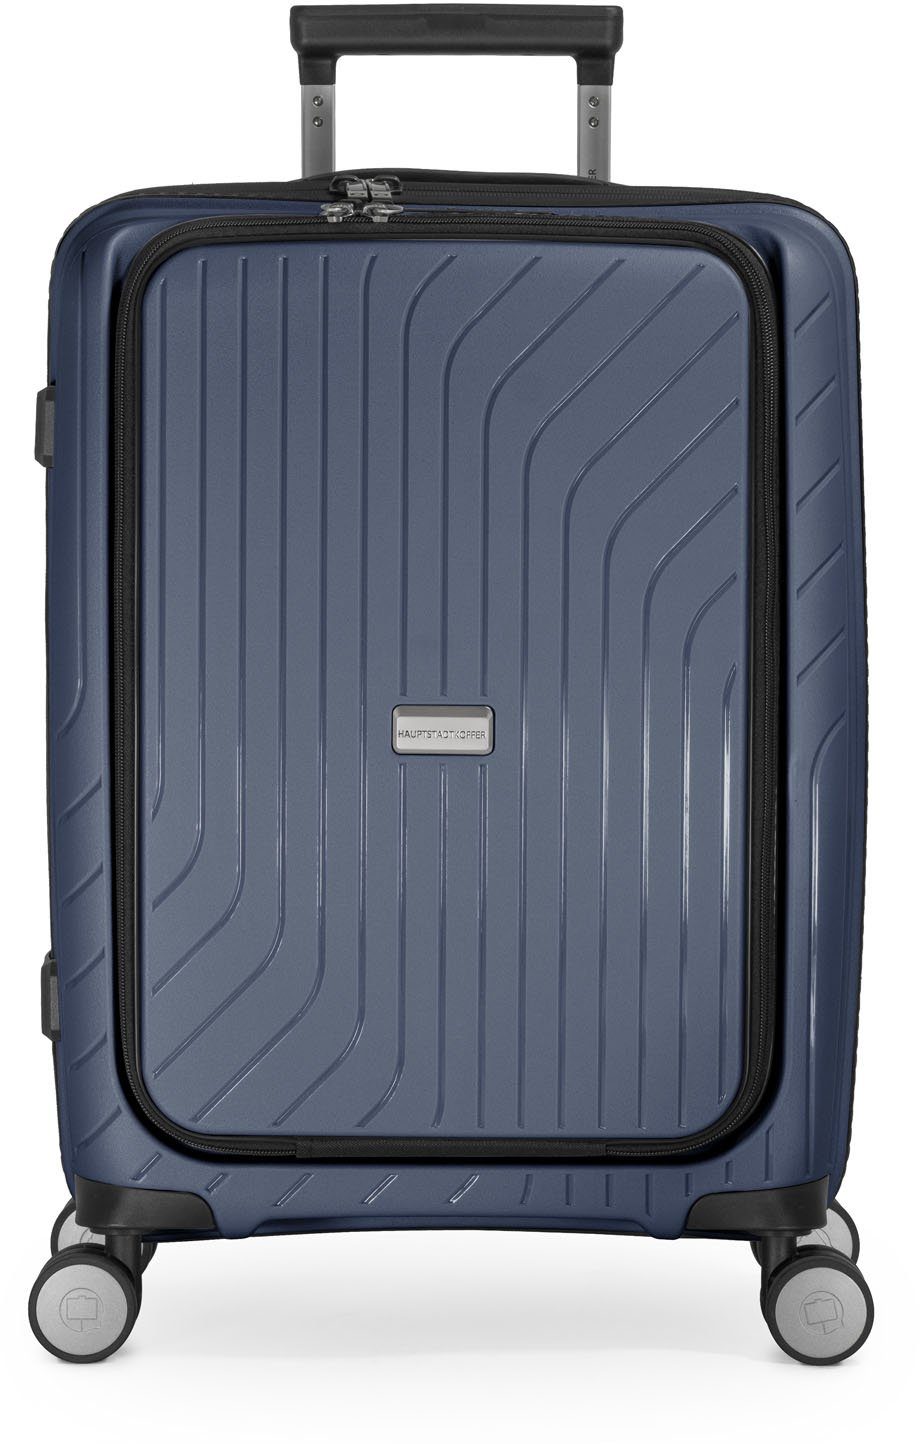 Hauptstadtkoffer Hartschalen-Trolley TXL, dunkelblau, 55 cm, 4 Rollen, mit  gepolstertem Laptopfach